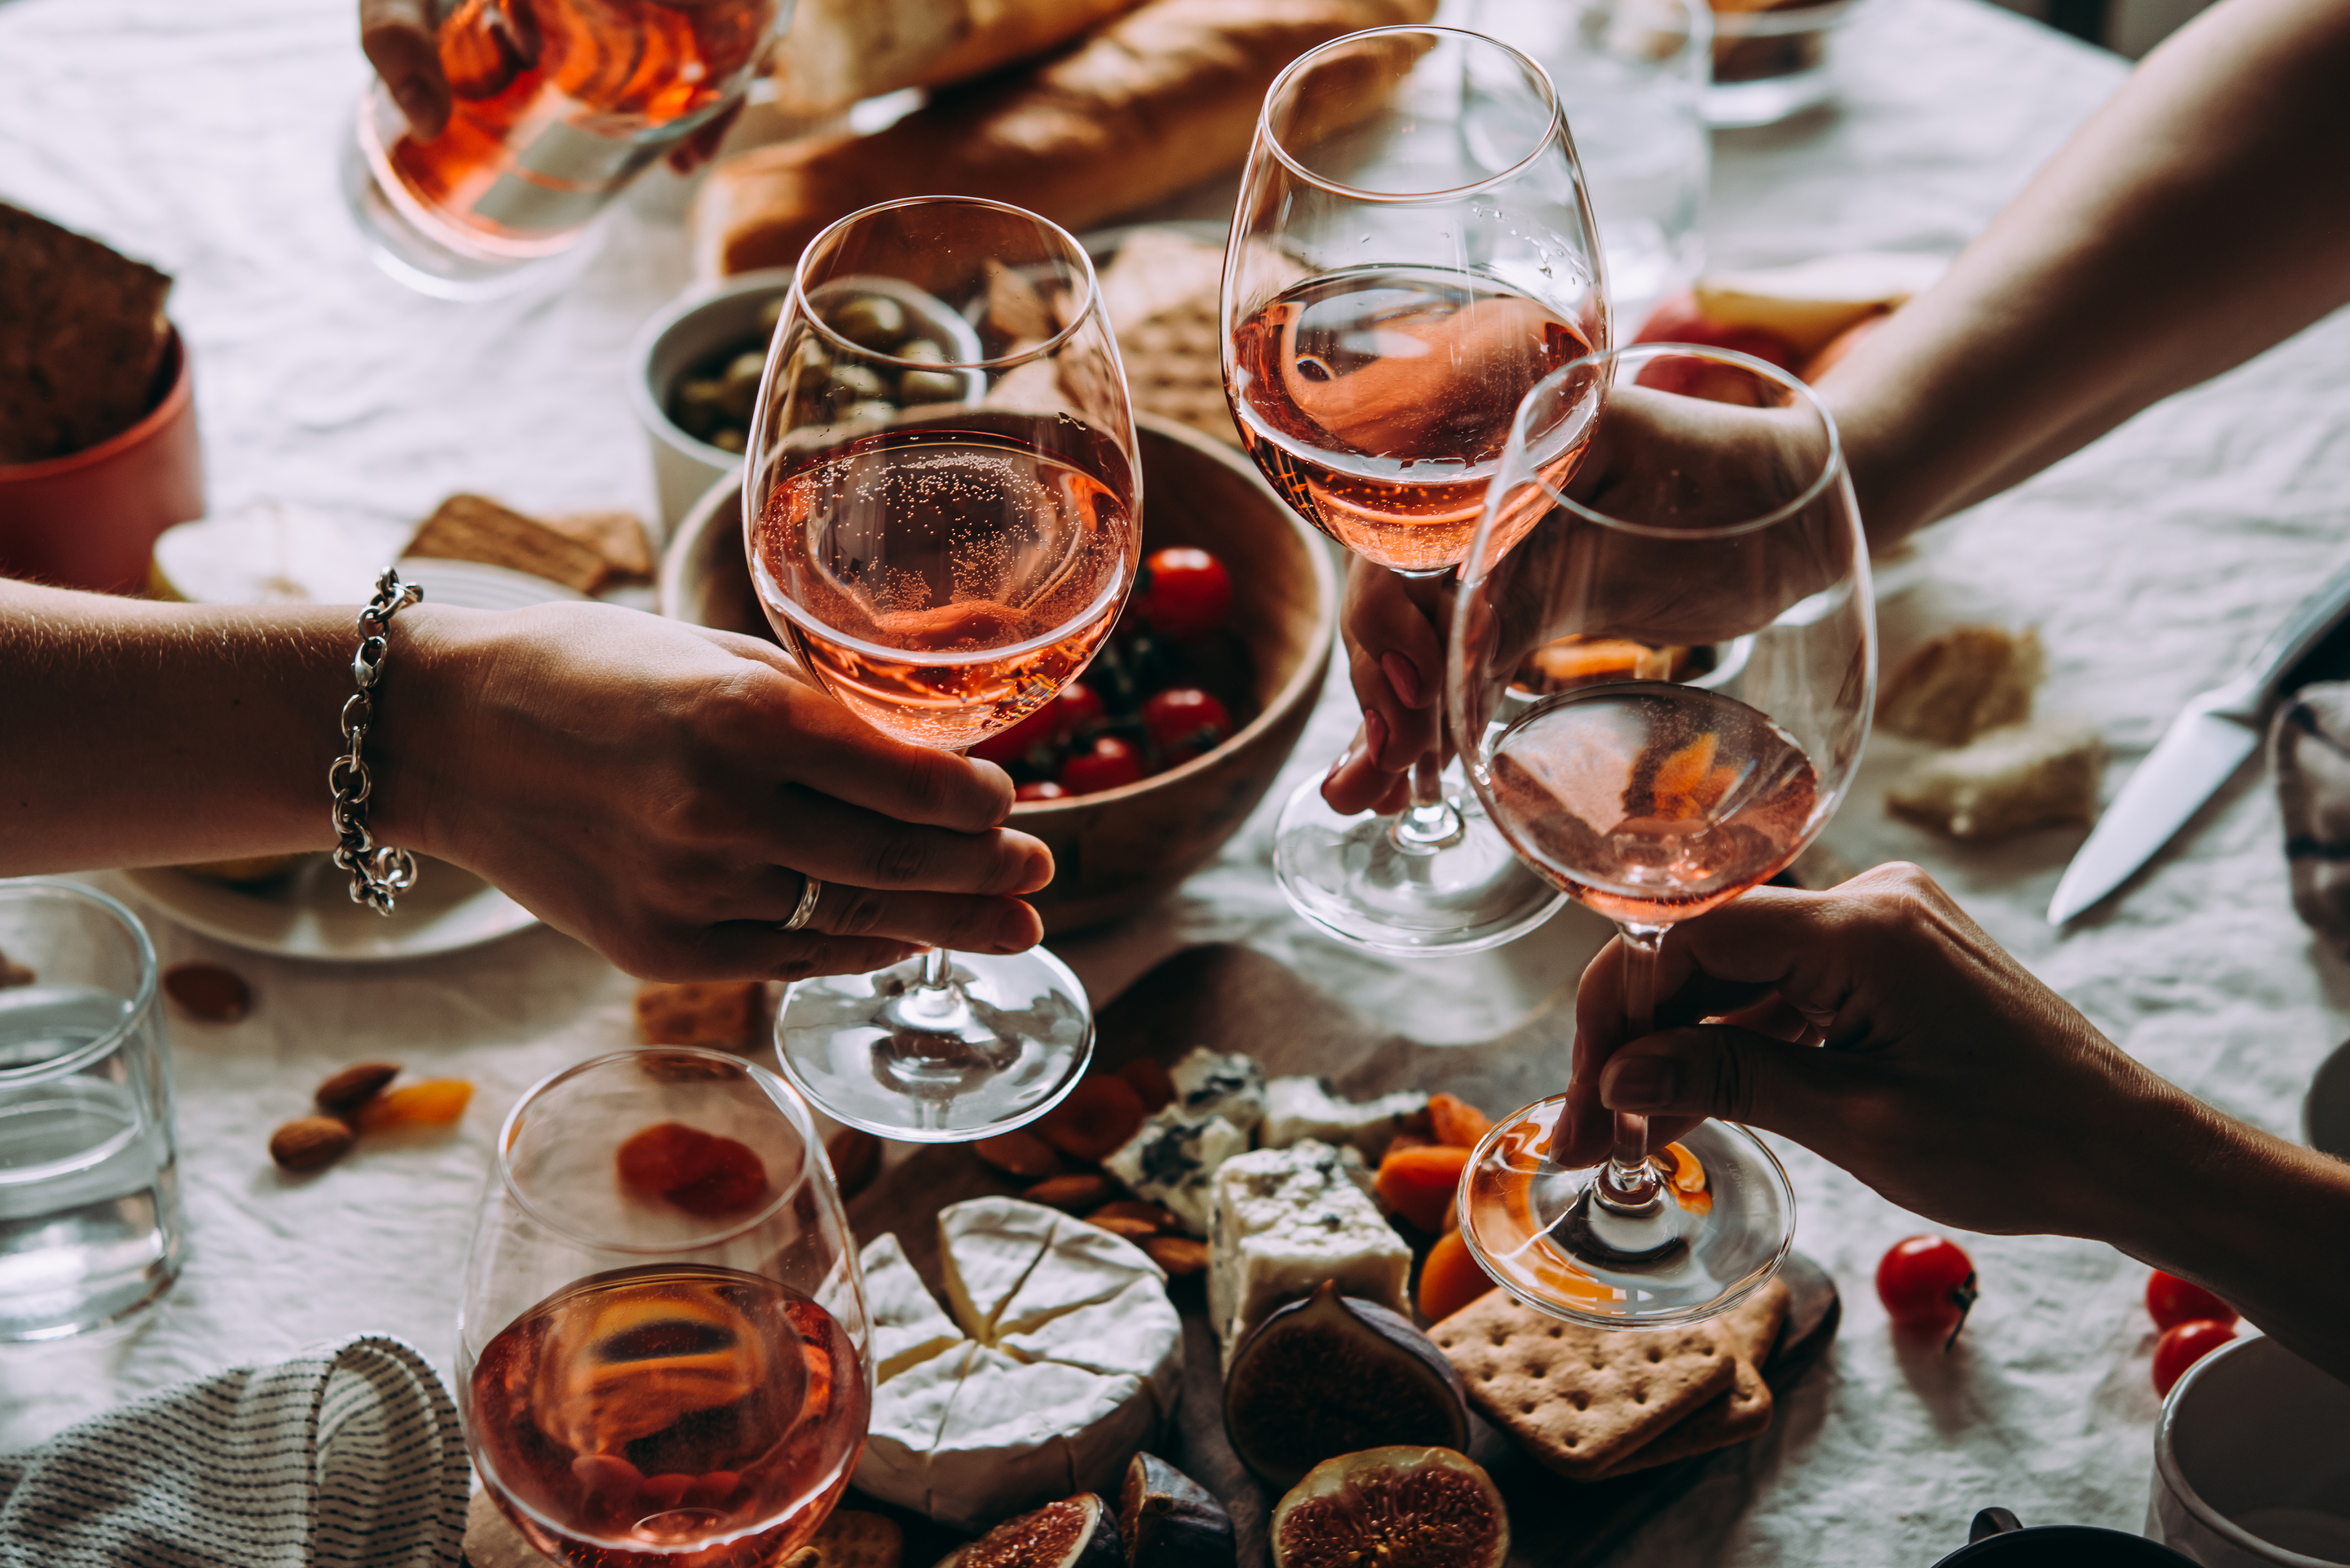 Gente sujetando copas de vino durante una fiesta | Foto: Shutterstock